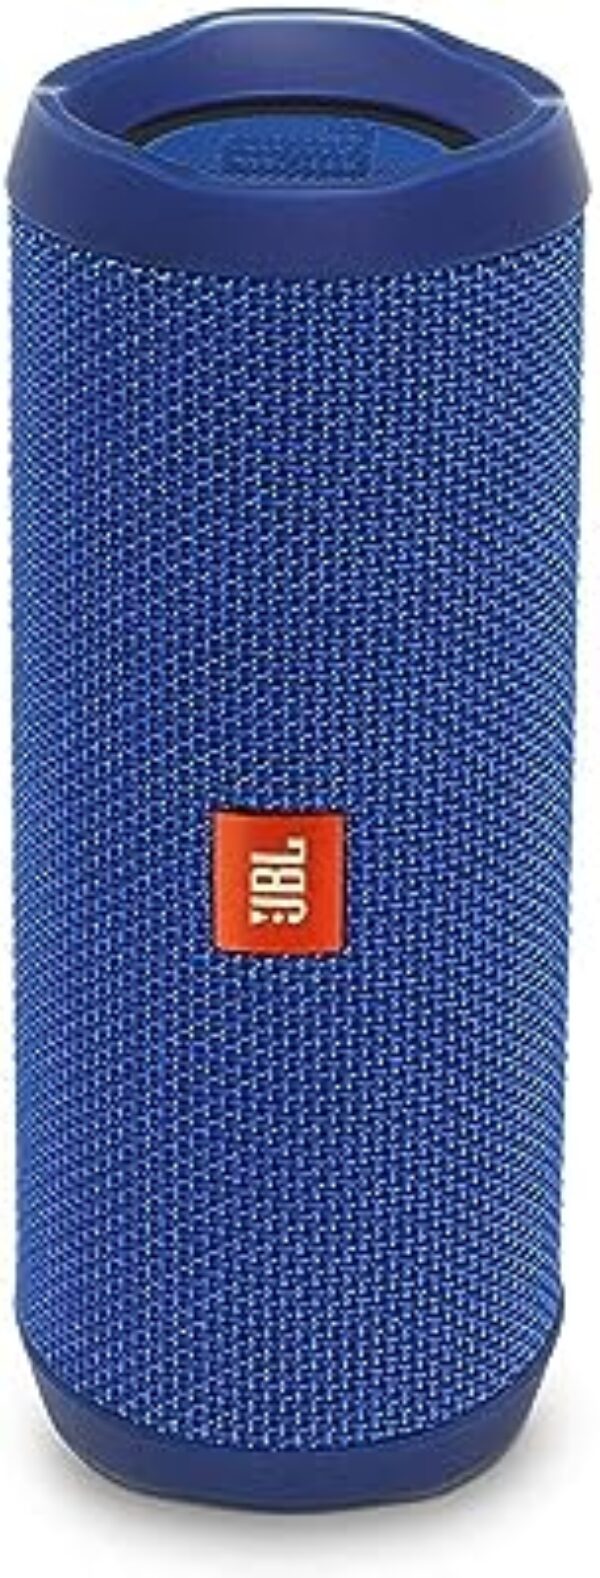 Renewed JBL Flip 4 Wireless Speaker (Blue)